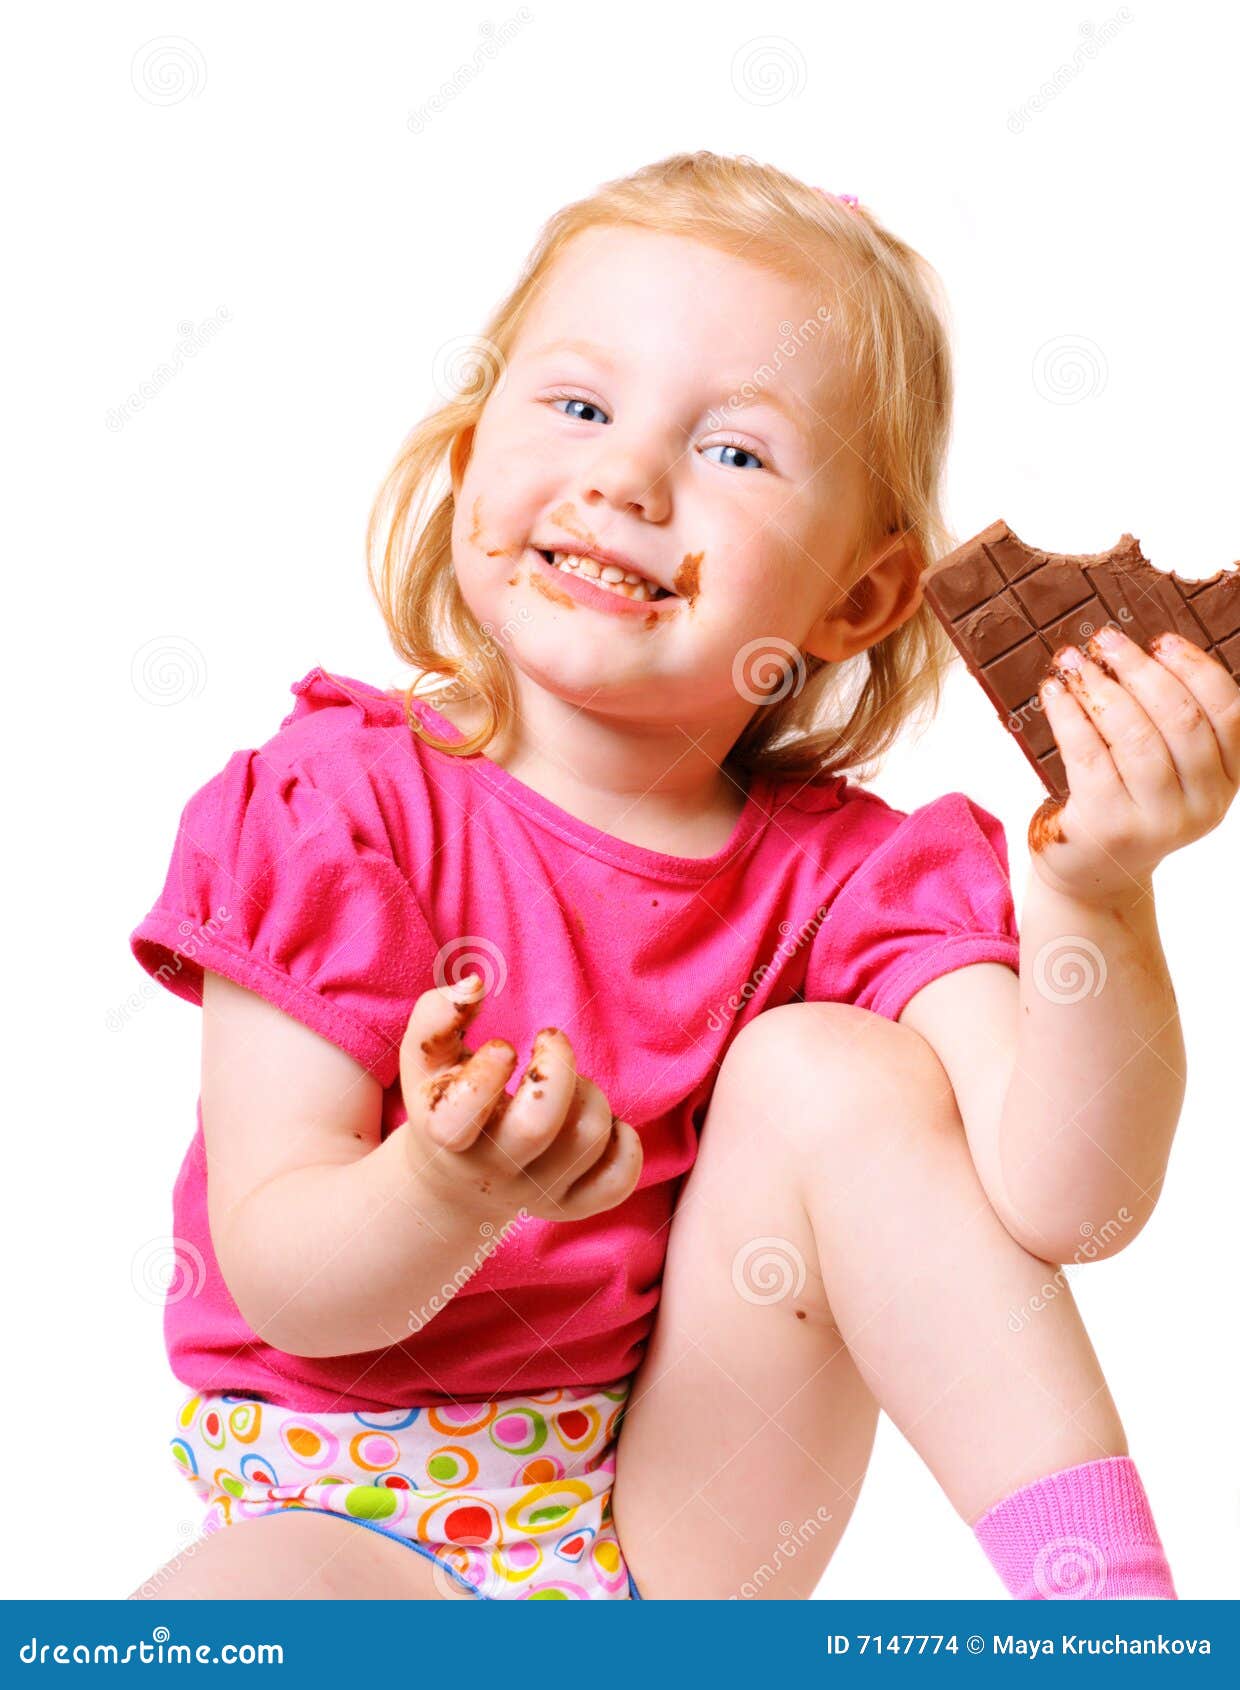 吃巧克力的美丽和可爱的女孩 库存图片. 图片 包括有 表面, 满意度, 苹果, 高兴, 享用, 诱惑, 头发 - 56563085